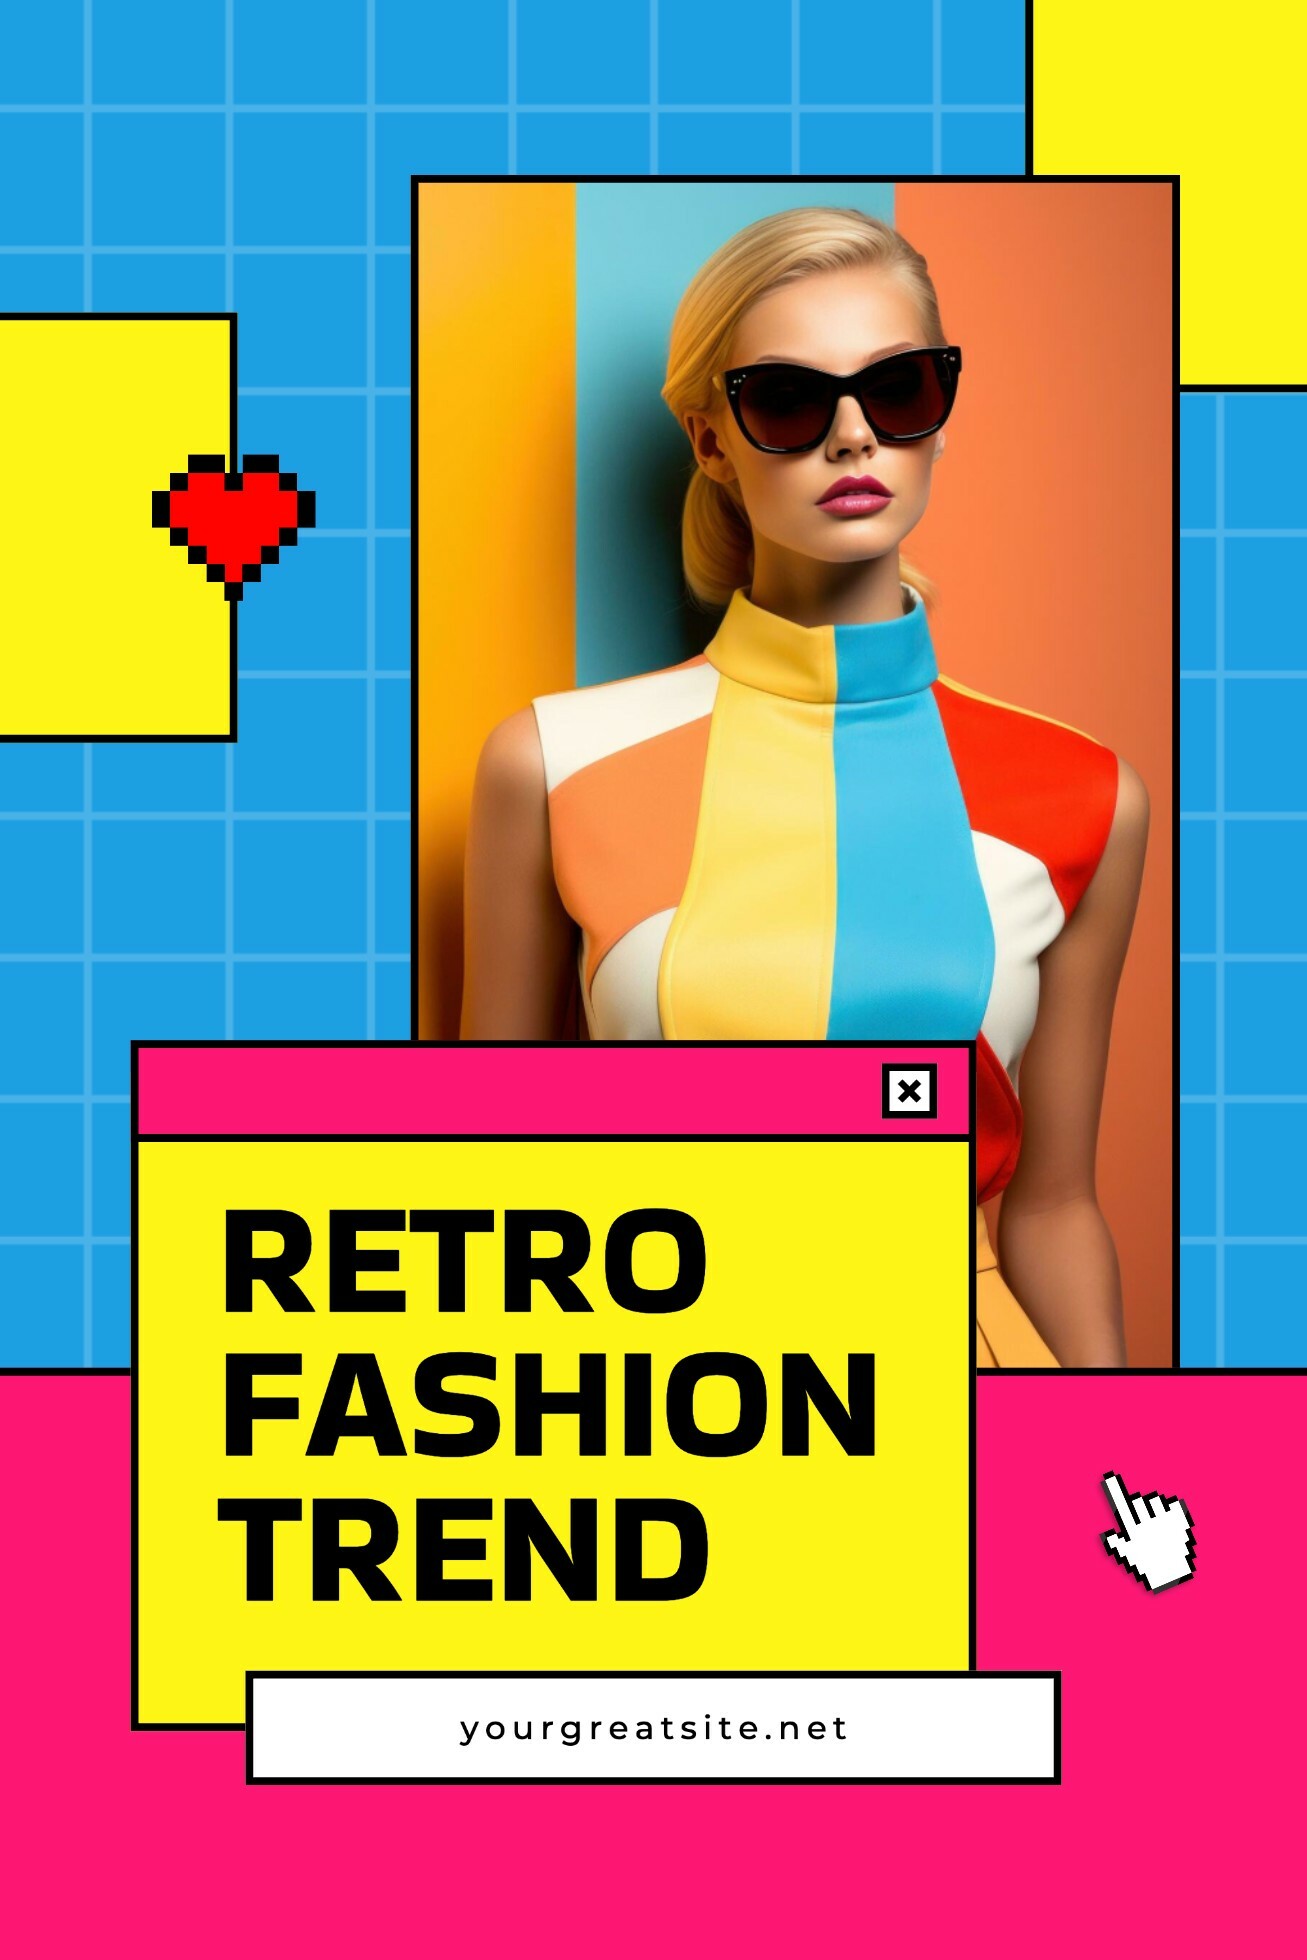 Bright retro fashion trend pinterest graphic